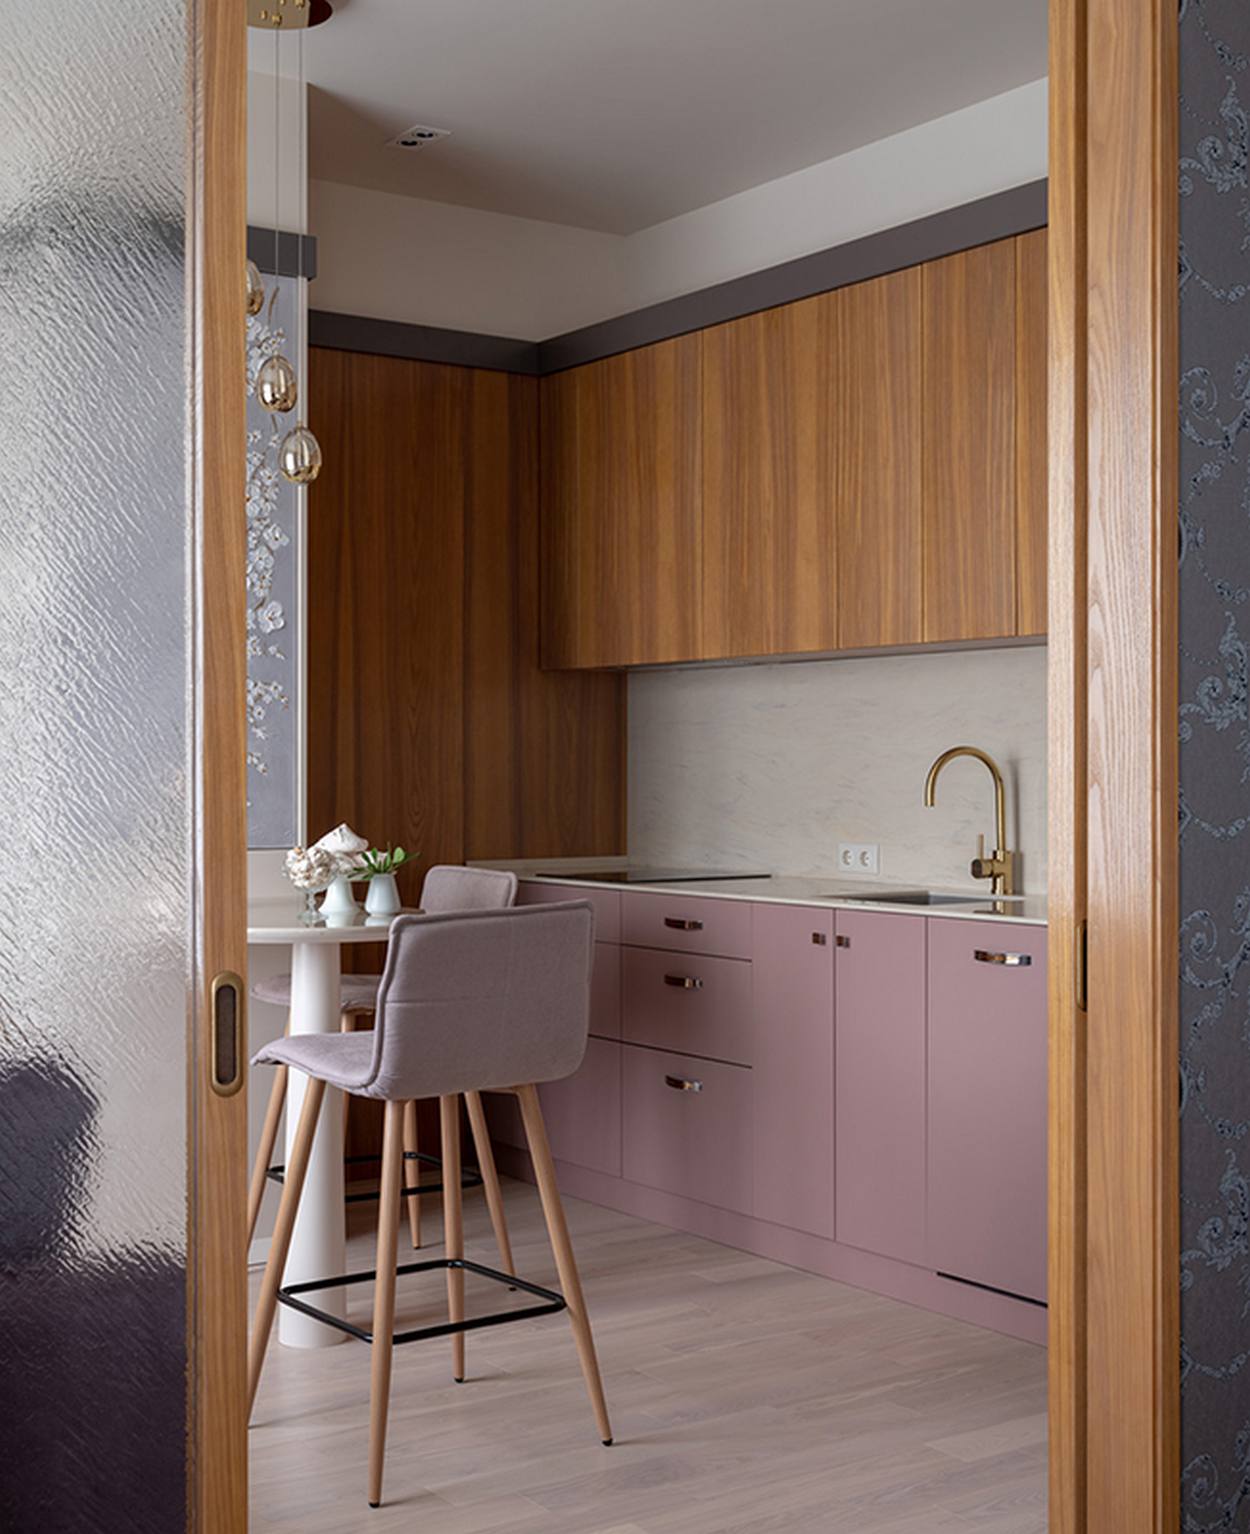 Hệ tủ bếp trên và bức tường gỗ có vân sọc dọc tạo sự đối lập nhẹ nhàng với tủ bếp bên dưới màu tím hoa cà. Backsplash ốp gạch màu trắng, cùng những chi tiết vòi rửa bằng sơn mạ vàng đẹp mắt.